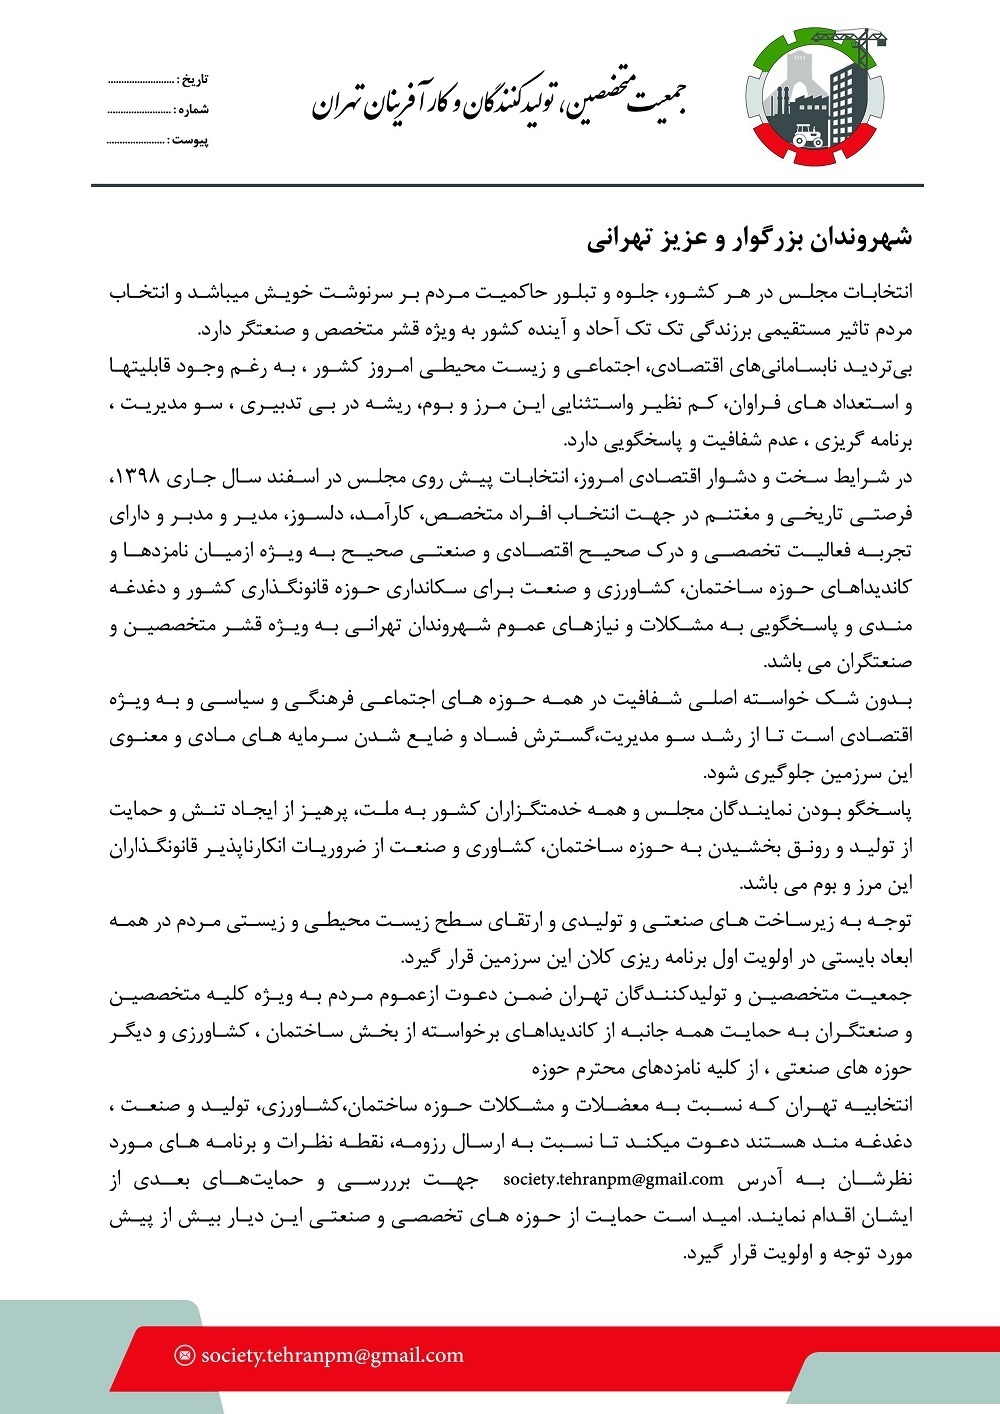 بیانیه جمعیت متخصصین, تولیدکنندگان و کارآفرینان تهران